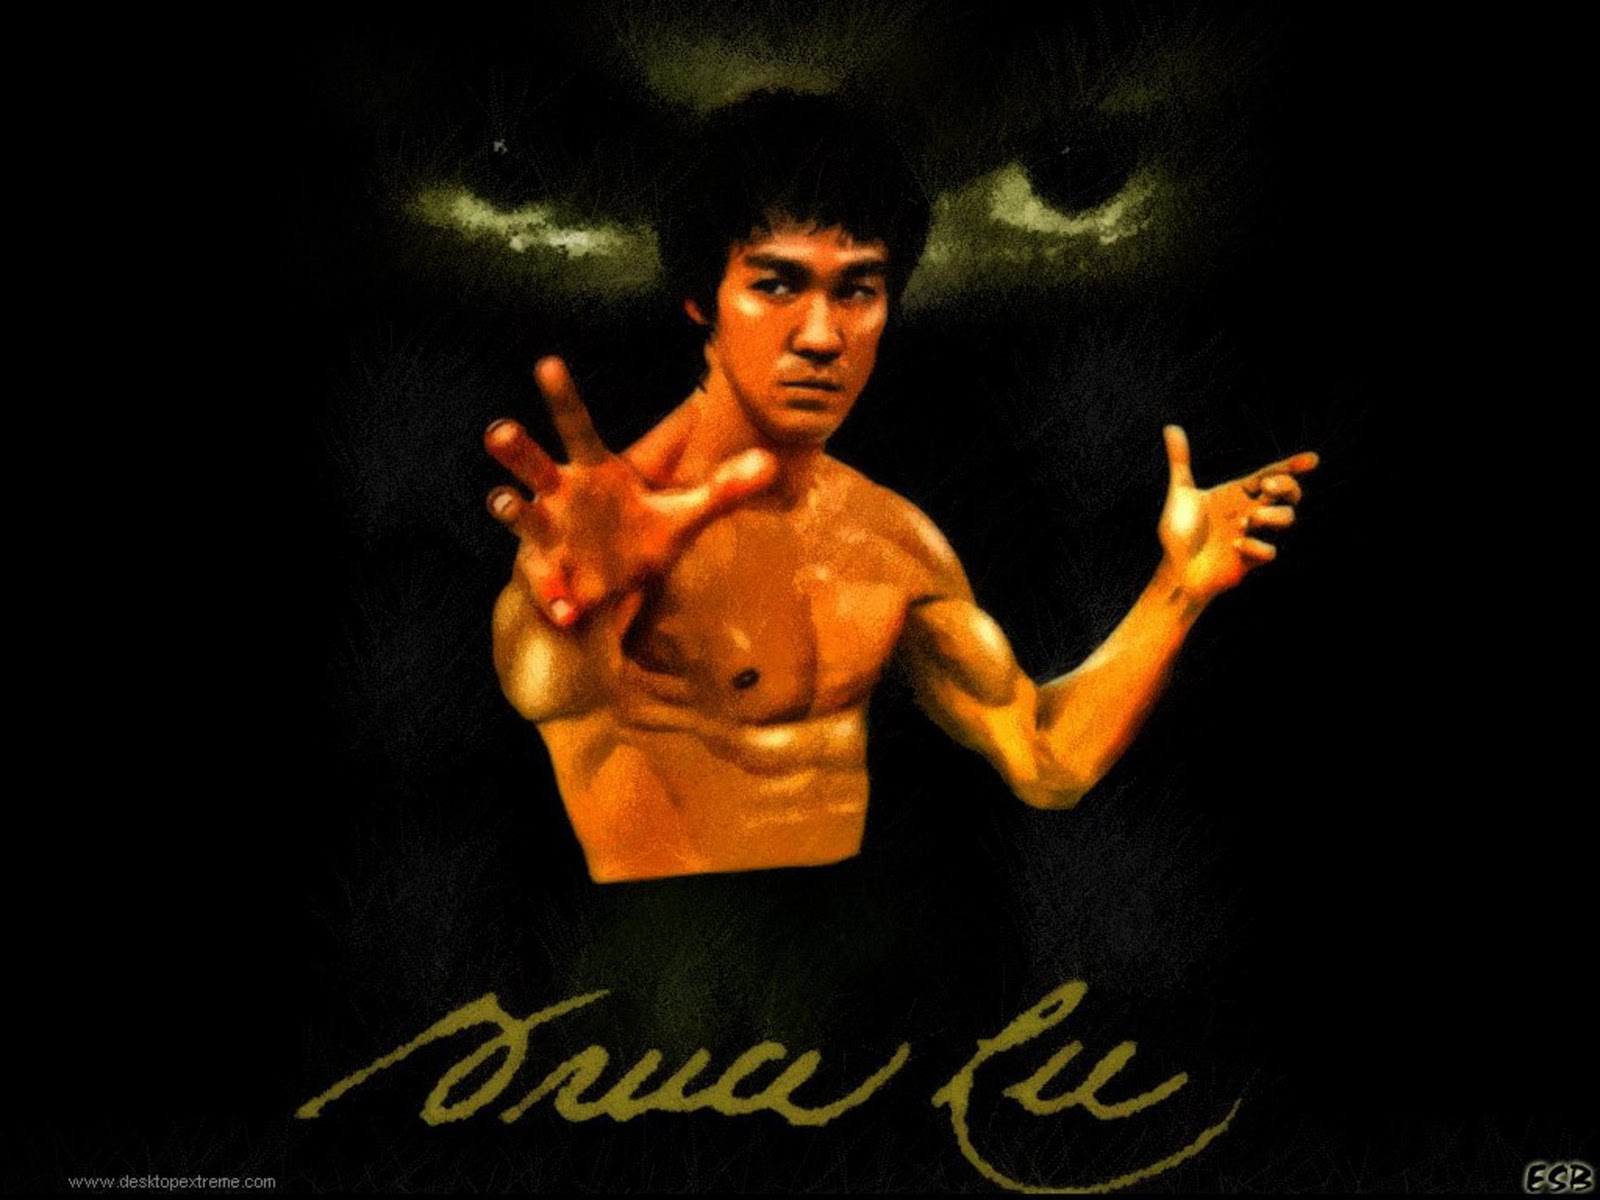 77+] Bruce Lee Wallpaper on WallpaperSafari